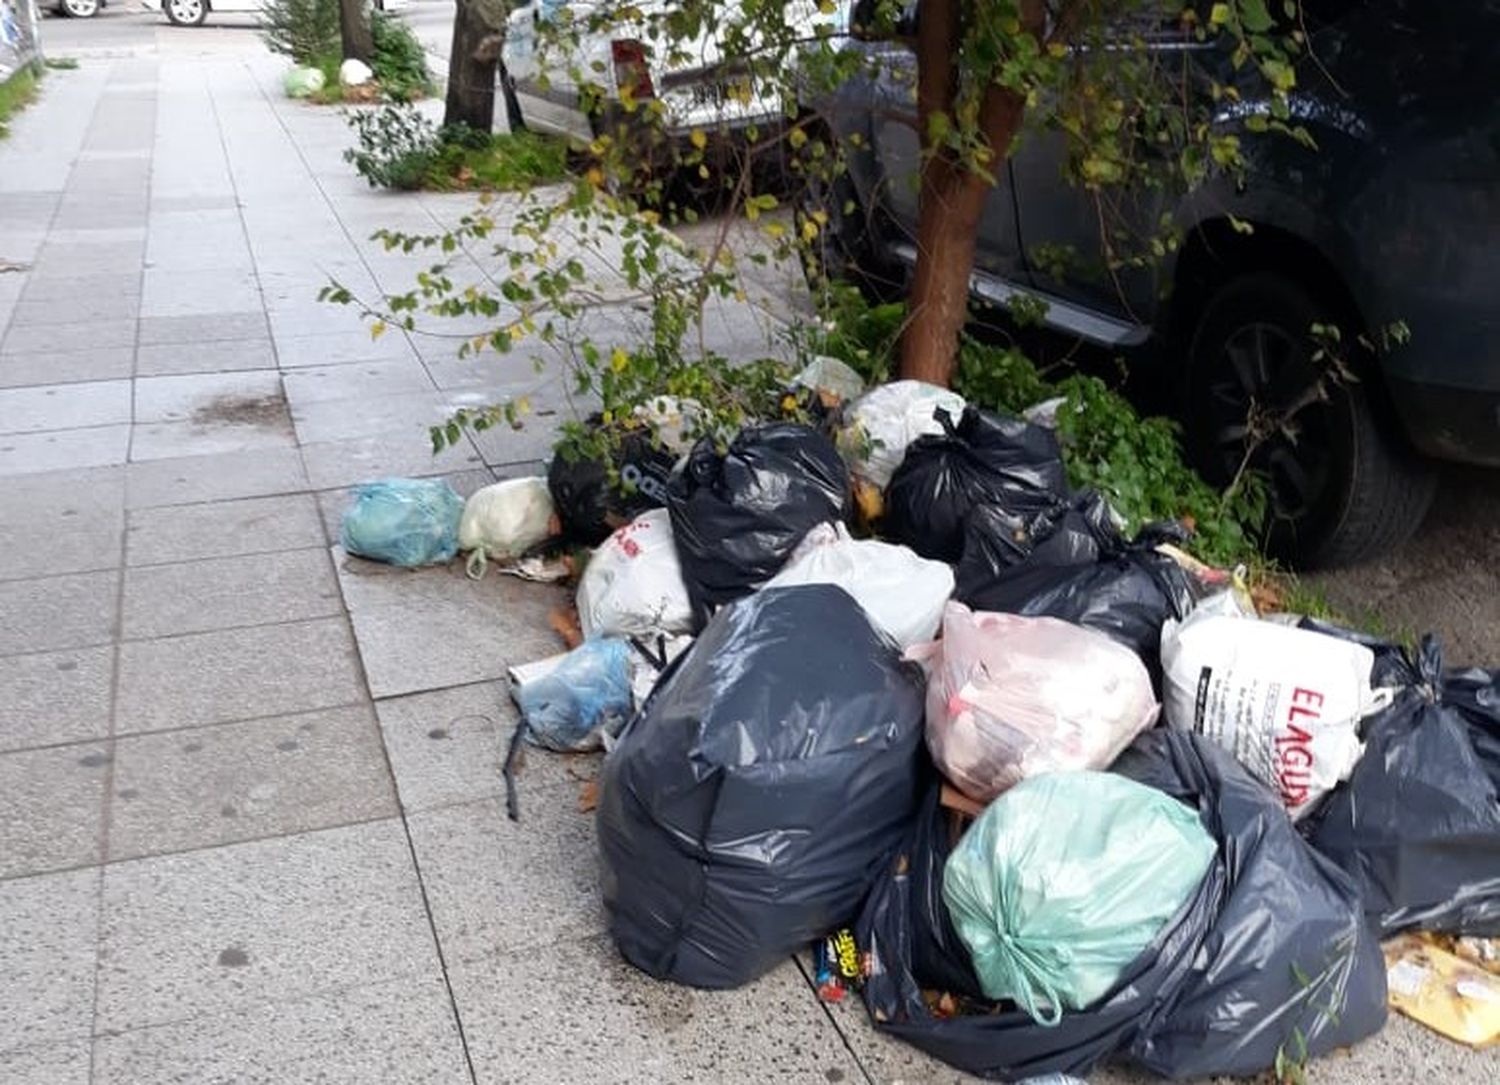 La basura y el verano: "La ciudad realmente presenta una situación de falta de higiene que no es la que quisiéramos"